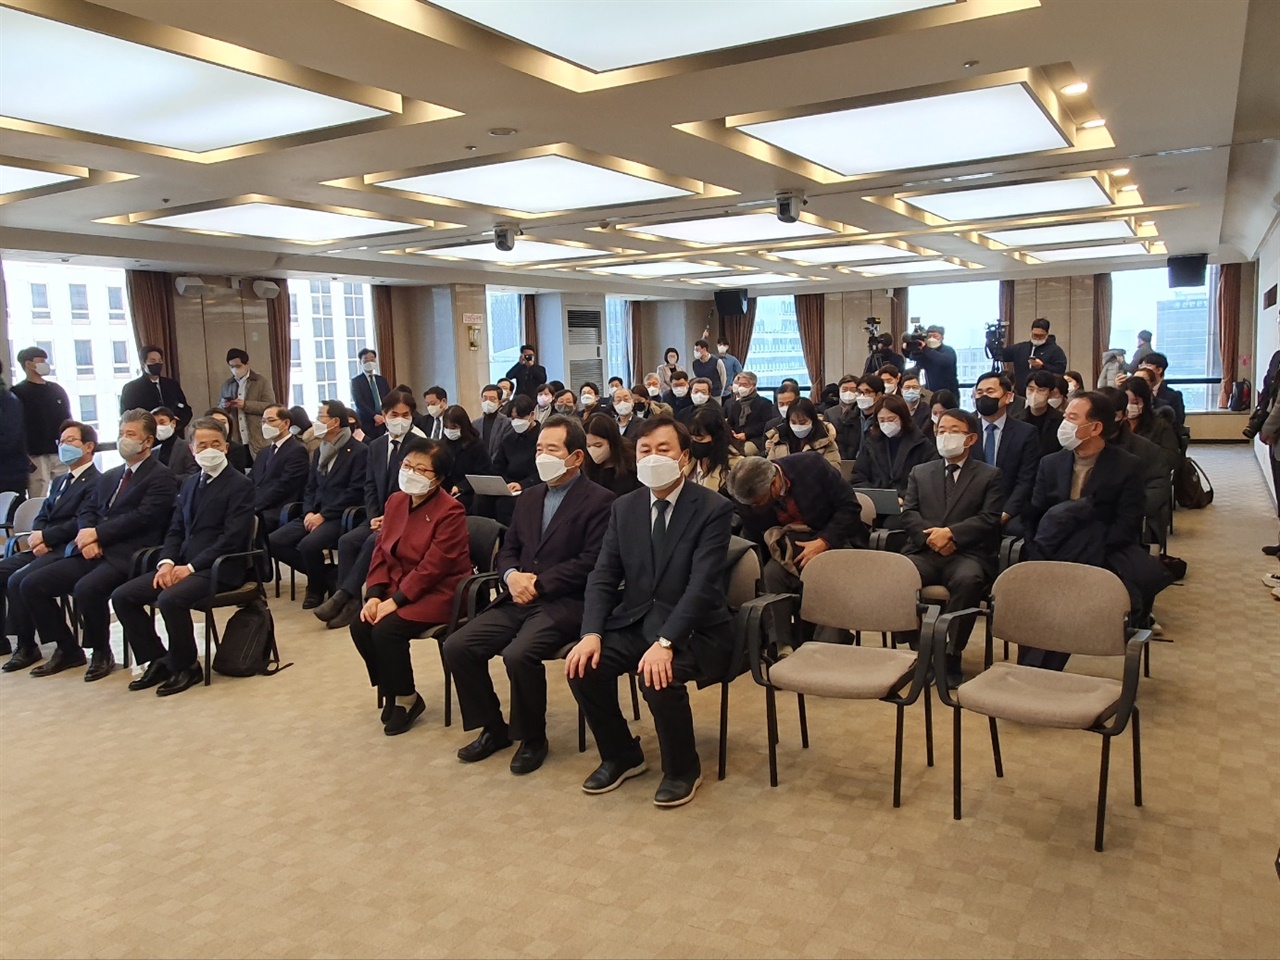 18일 서울 중구 프레스센터에서 열린 포럼 사의재 창립 기자회견에 문재인 정부 주요 인사들이 참석했다.